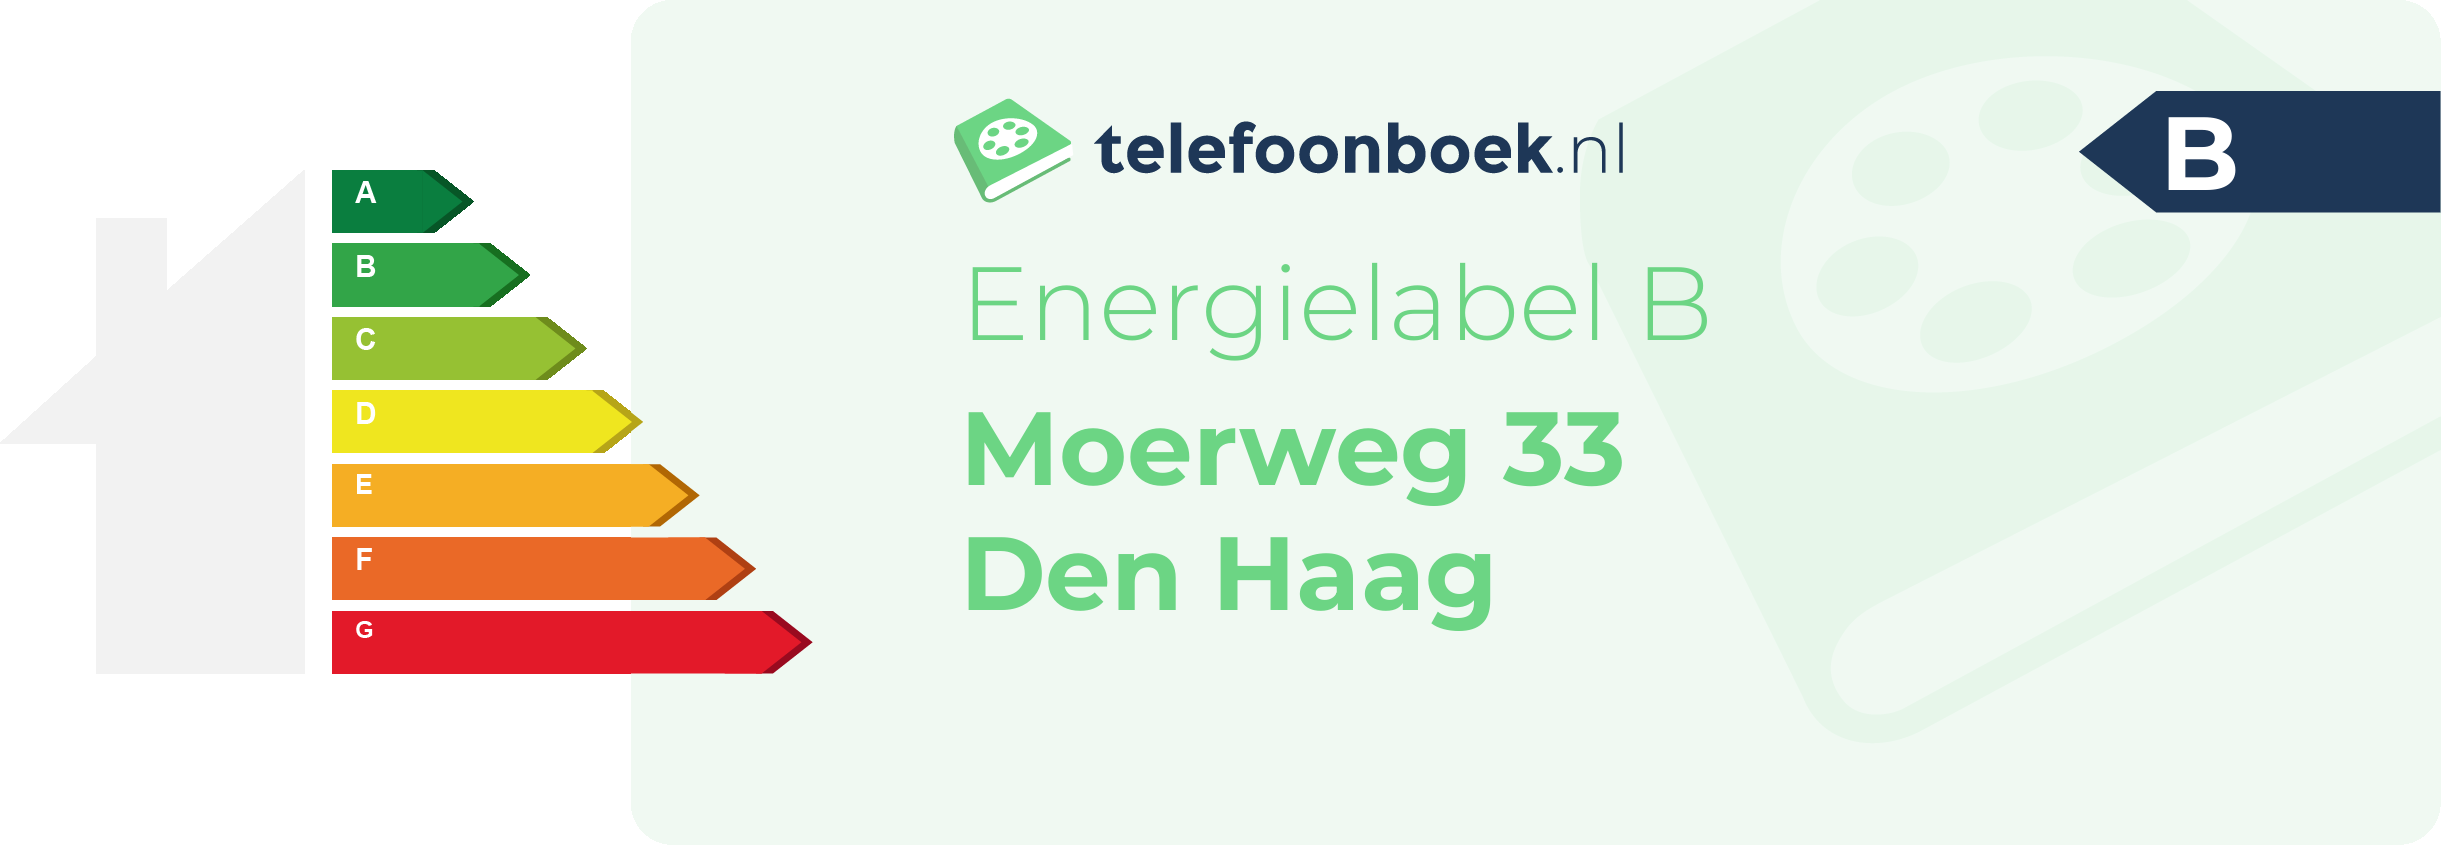 Energielabel Moerweg 33 Den Haag